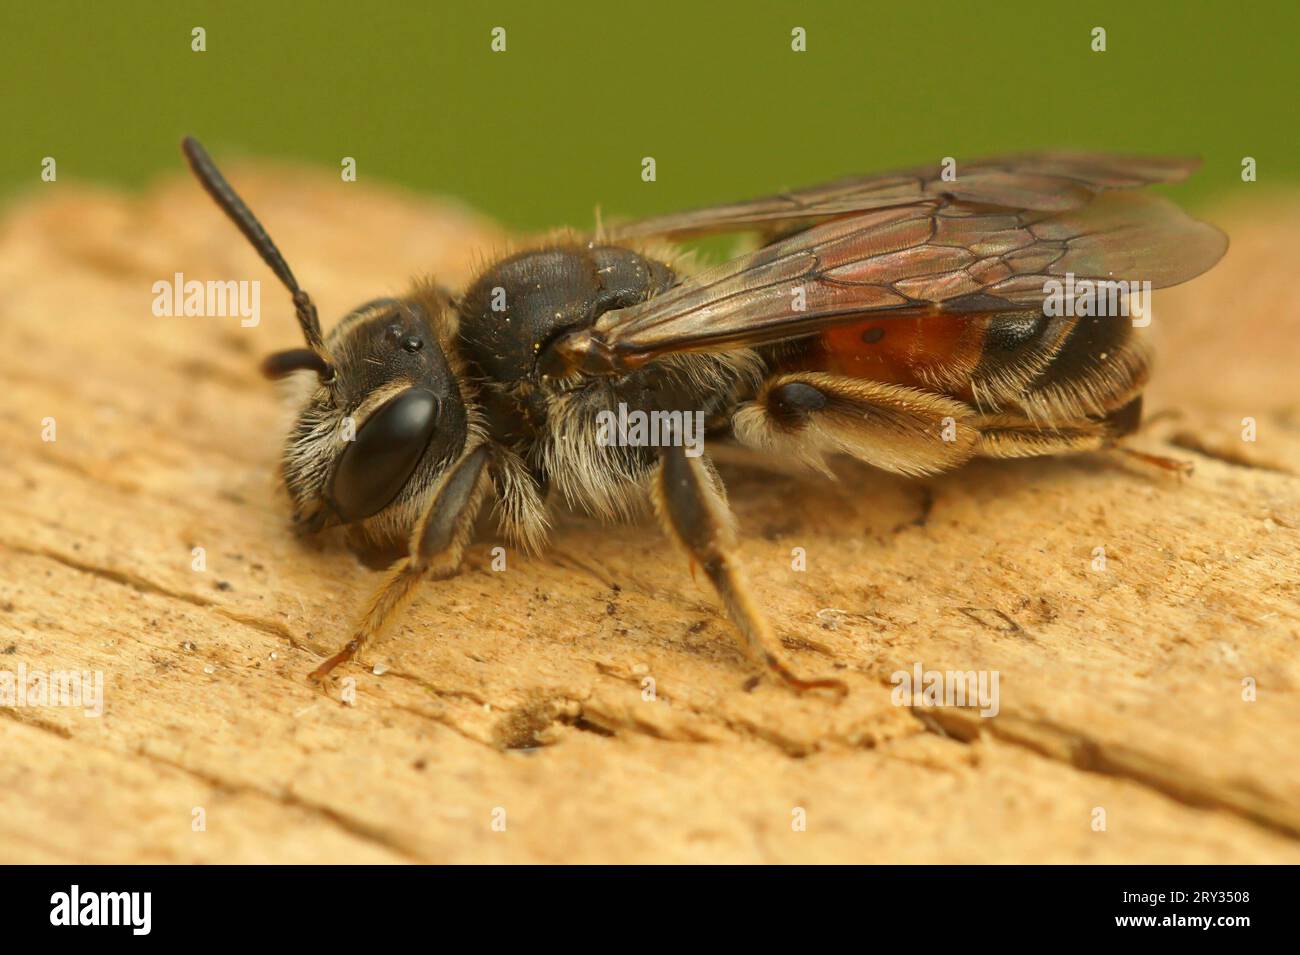 Natürliche Nahaufnahme einer roten Bergbaubiene, Andrena labiata, die auf Holz sitzt Stockfoto